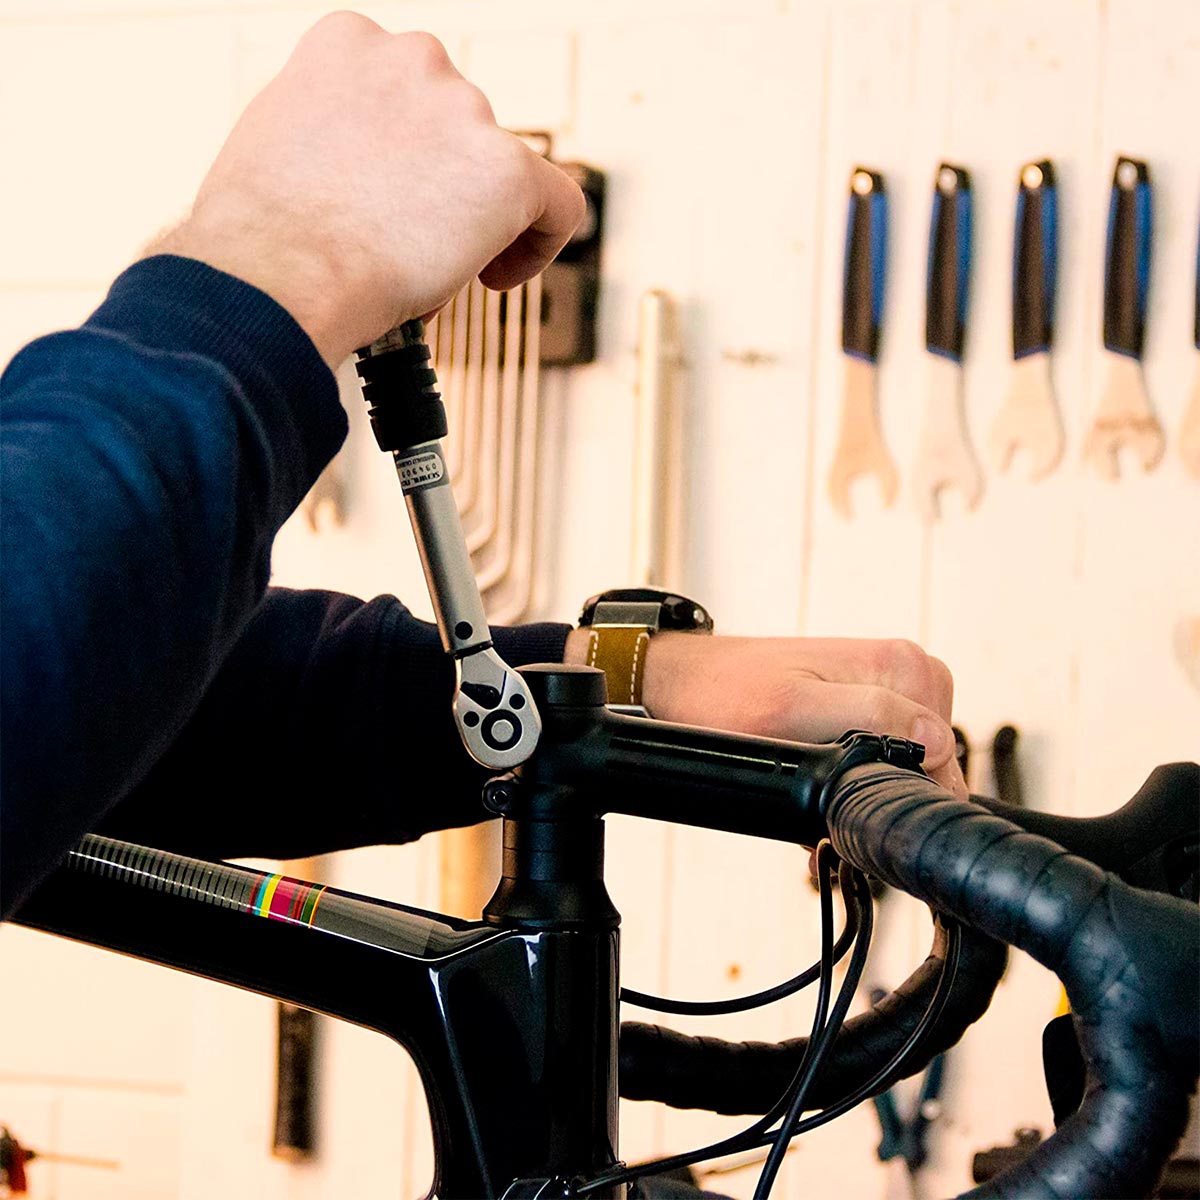 TorqueSet de BBB Cycling, la llave dinamométrica (con accesorios) que no puede faltar entre las herramientas de un ciclista